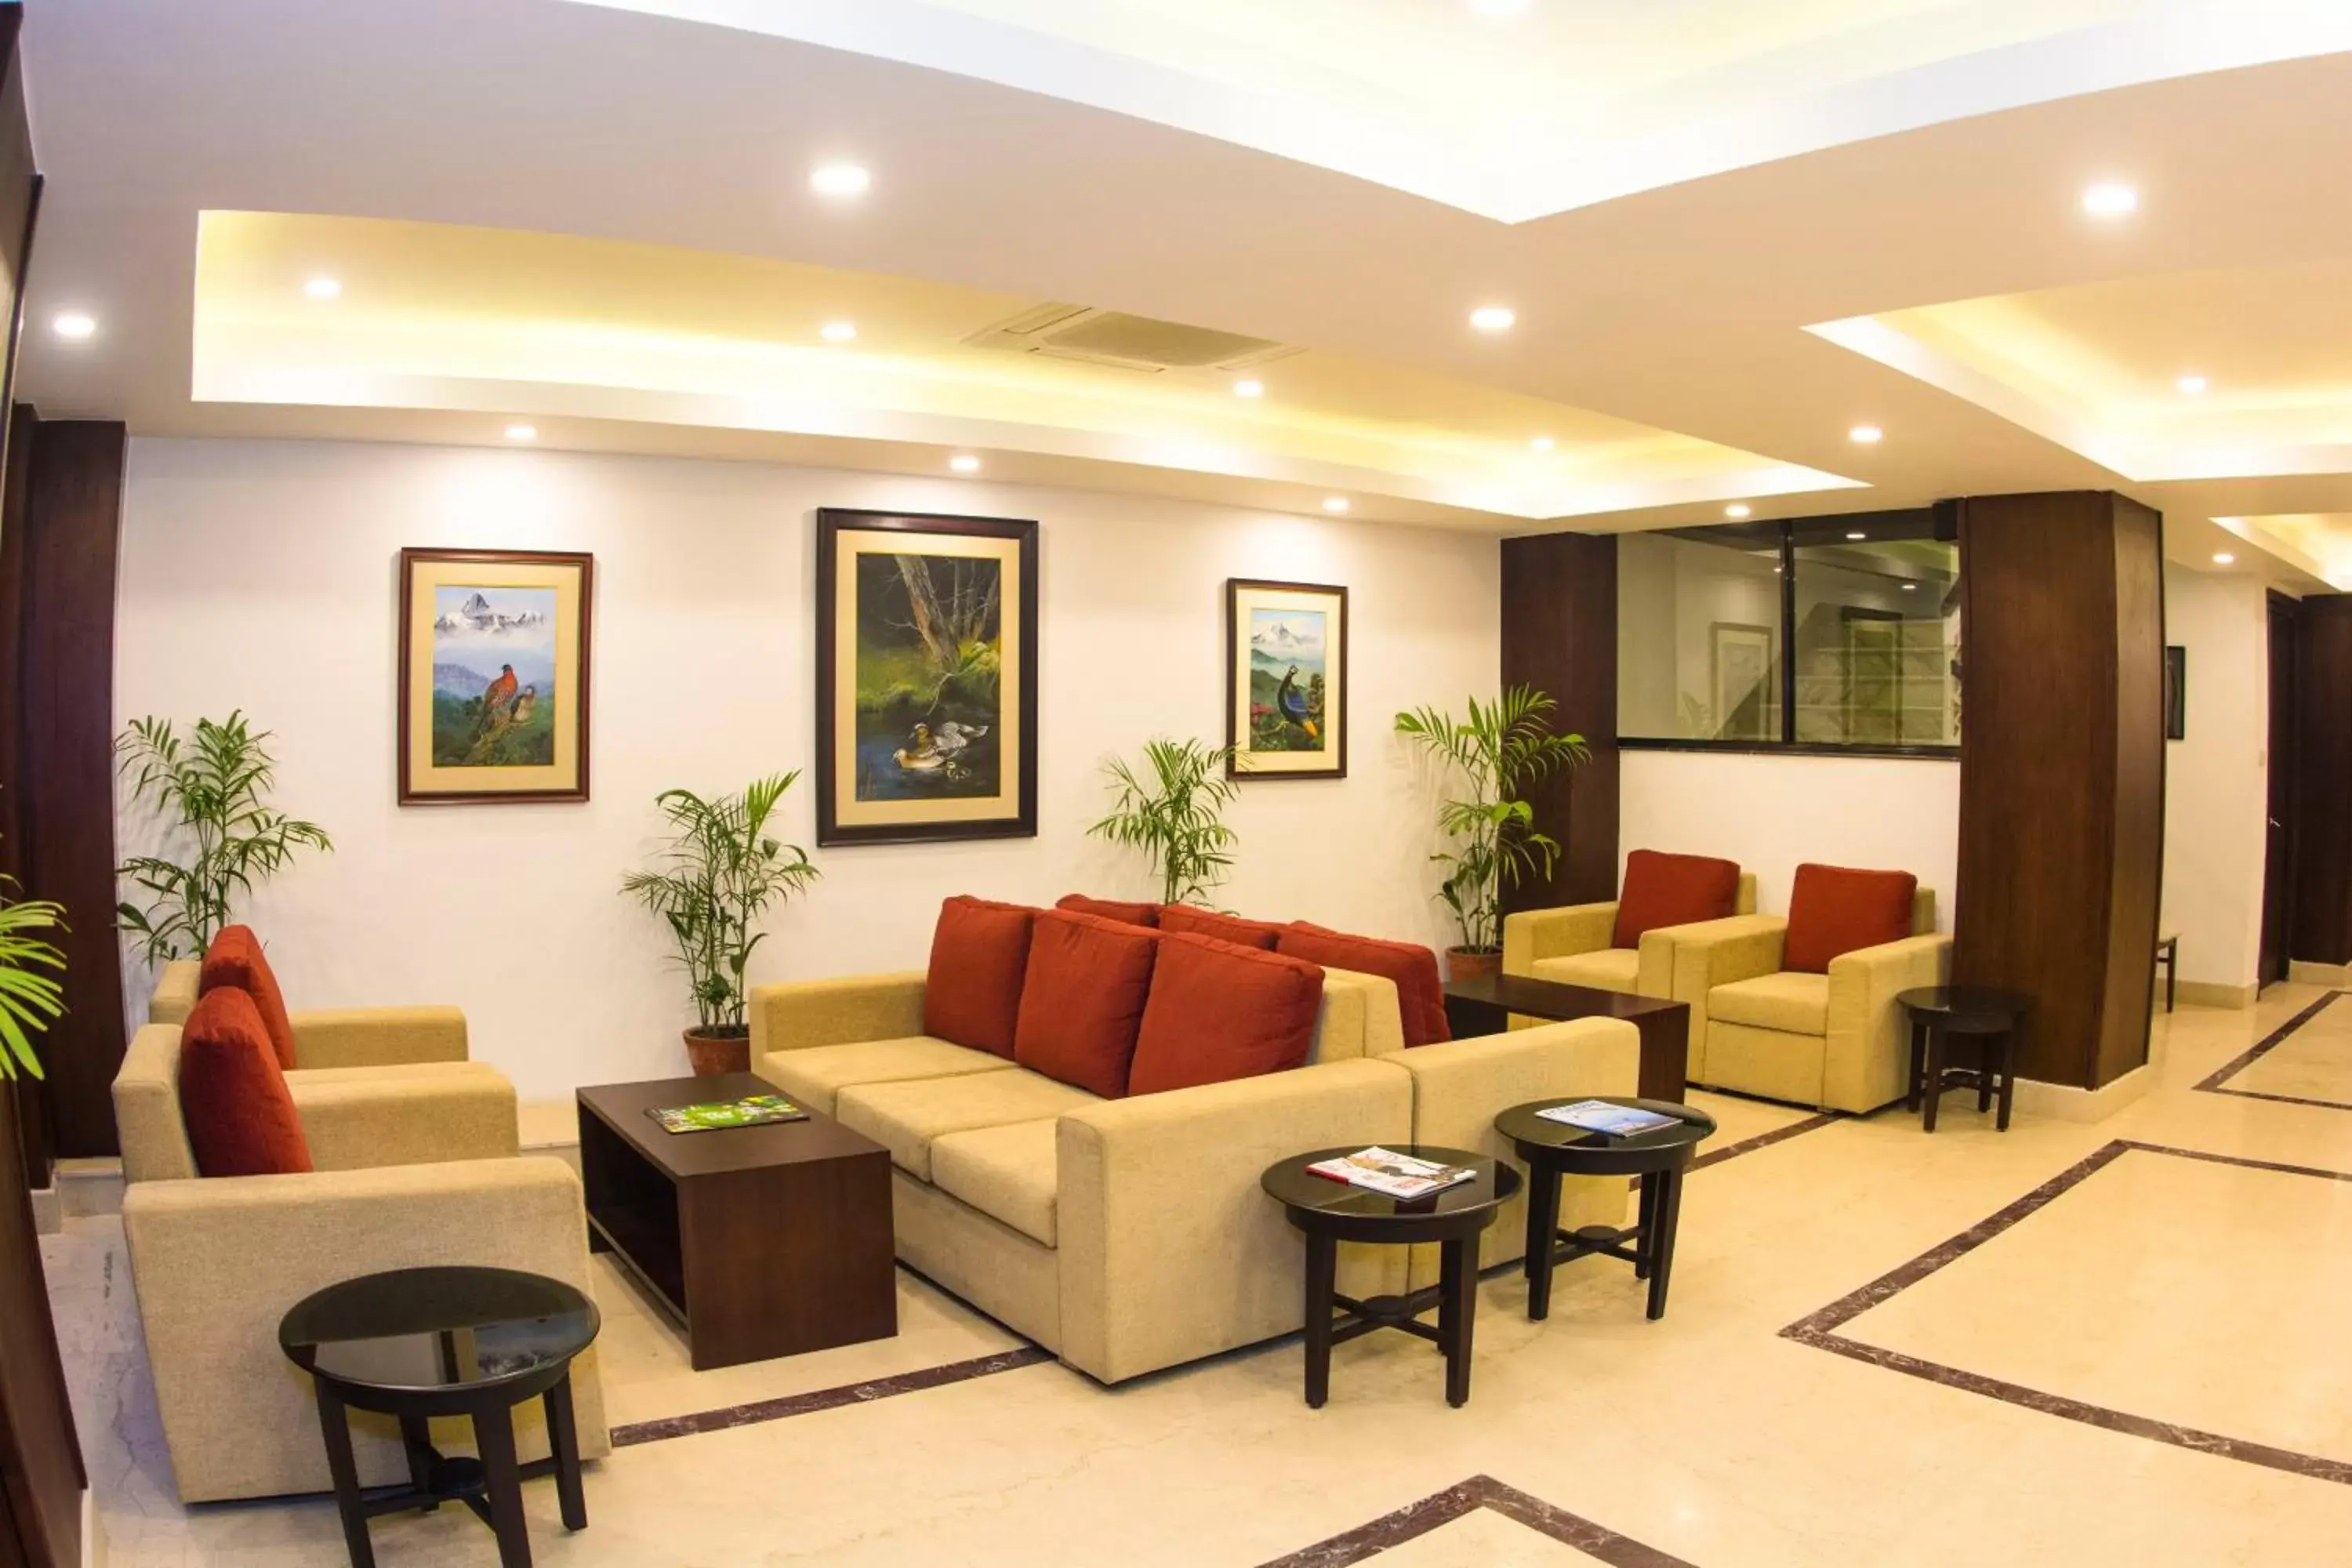 Lobby or reception, Lobby/Reception in M Hotel Thamel-Kathmandu